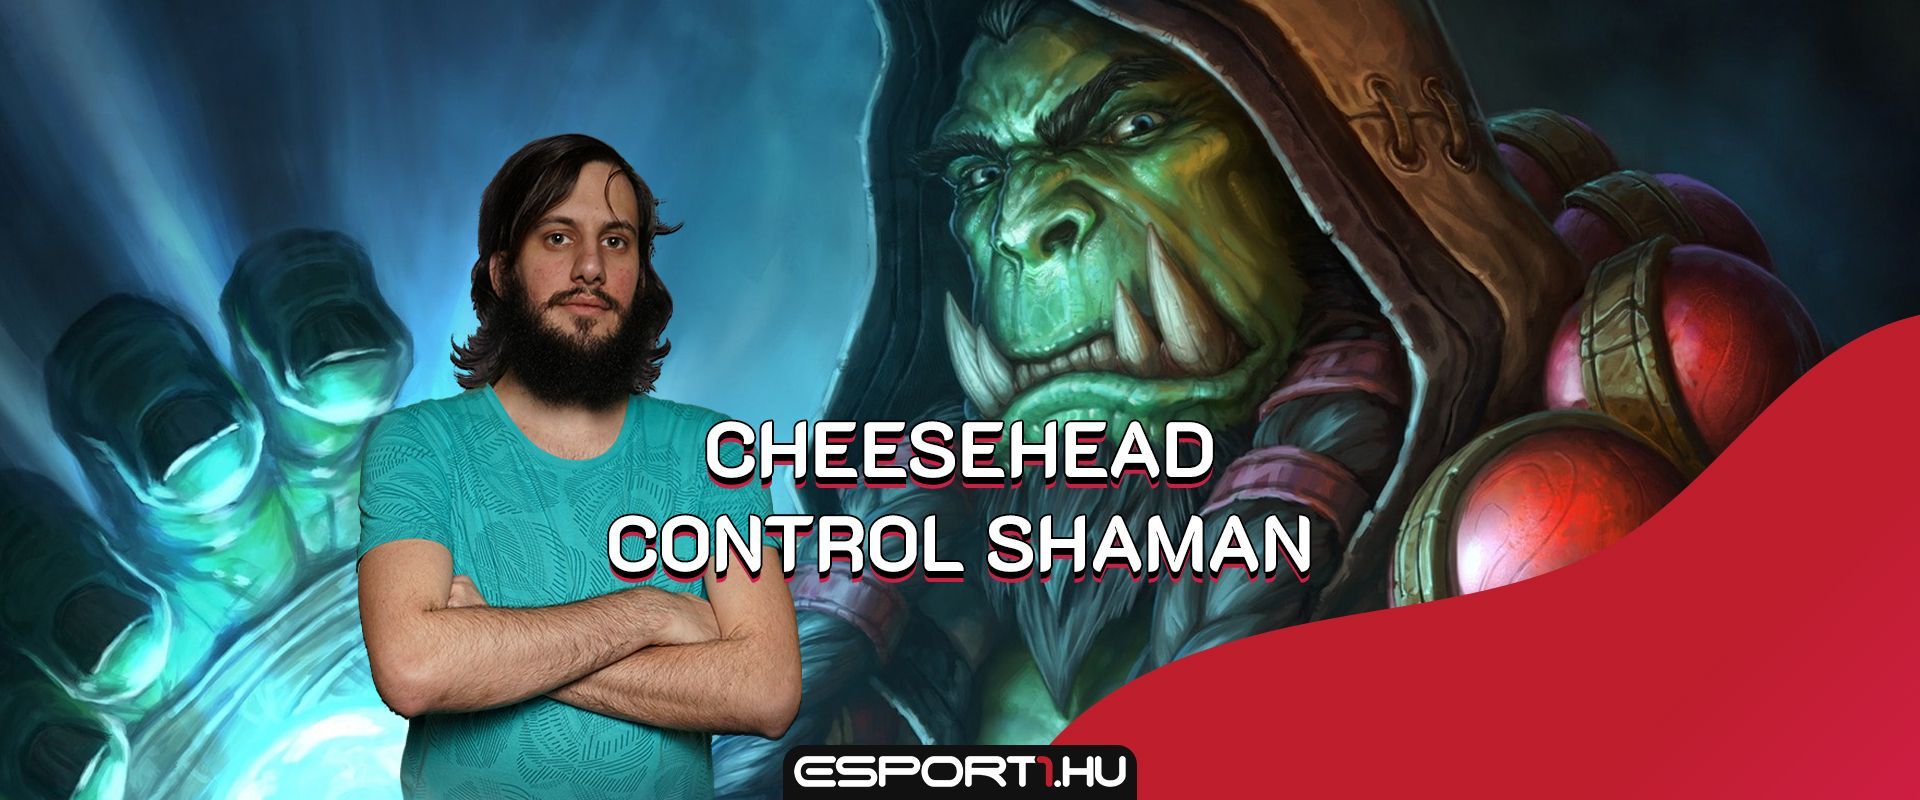 CheeseHead Control Shamanja Legendig meg sem állt